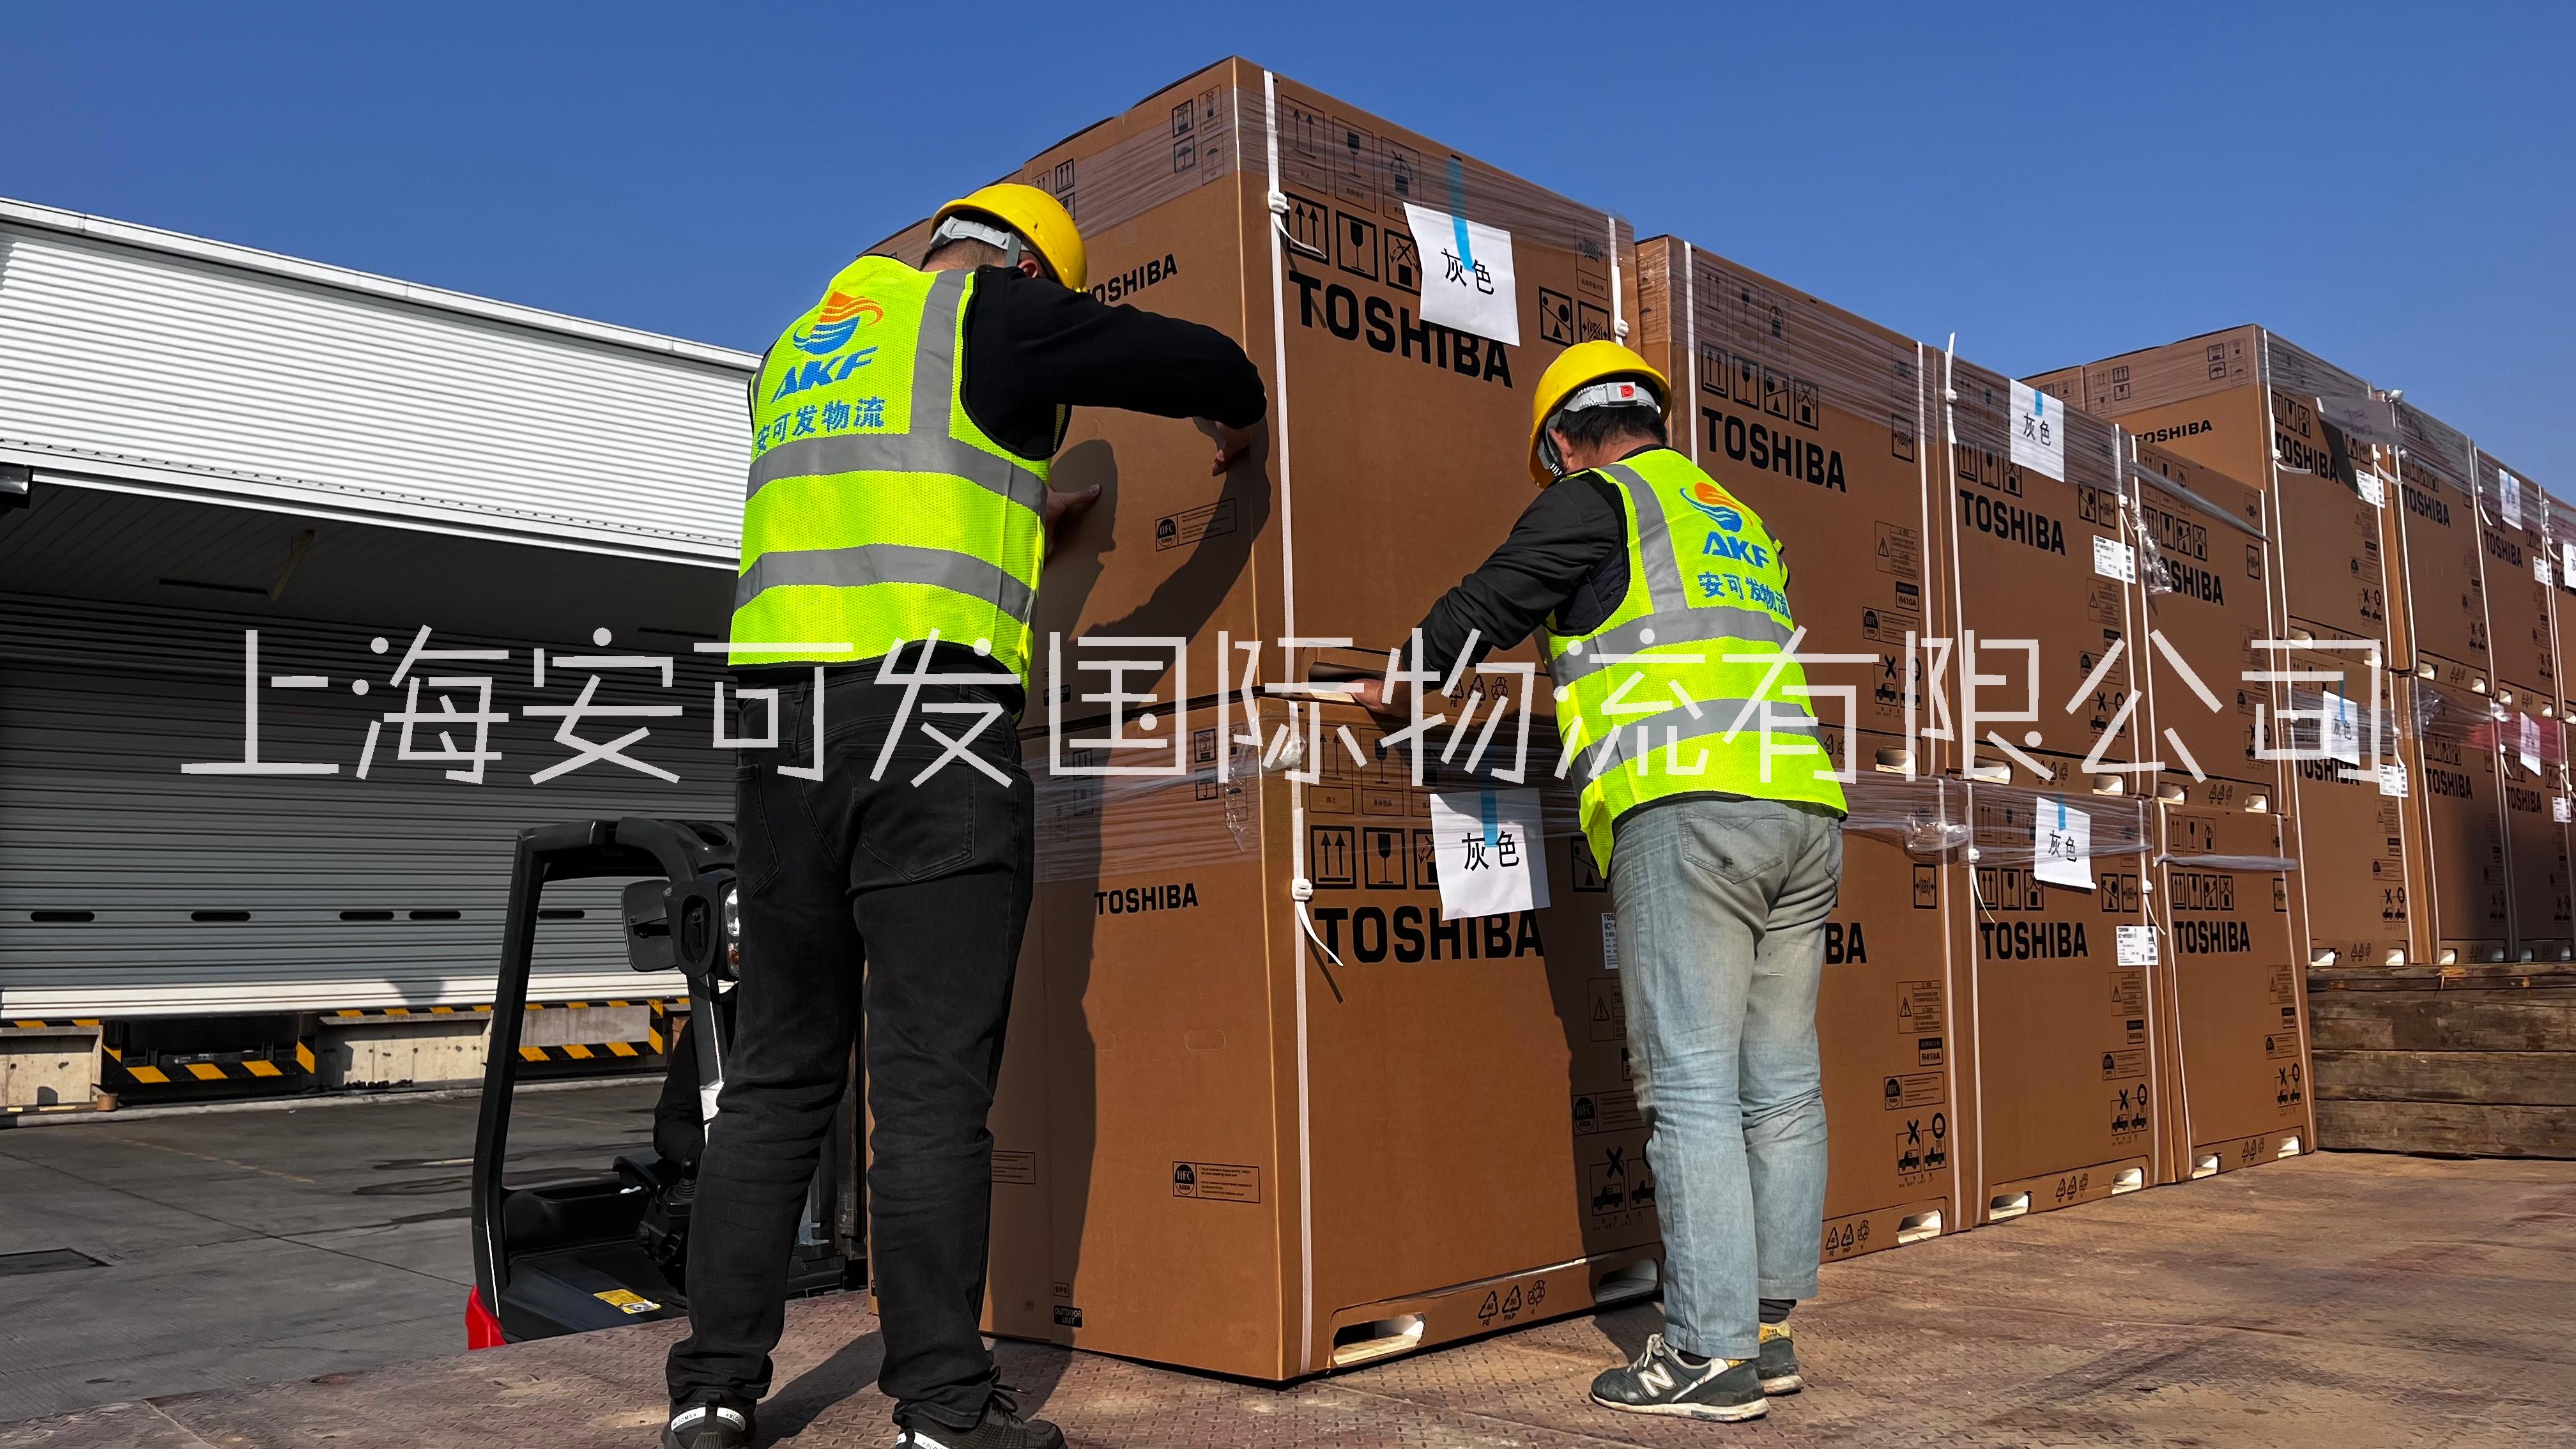 上海至无锡整车运输 机械设备运输  上海至无锡物流公司 仓储物流  上海至无锡物流公司